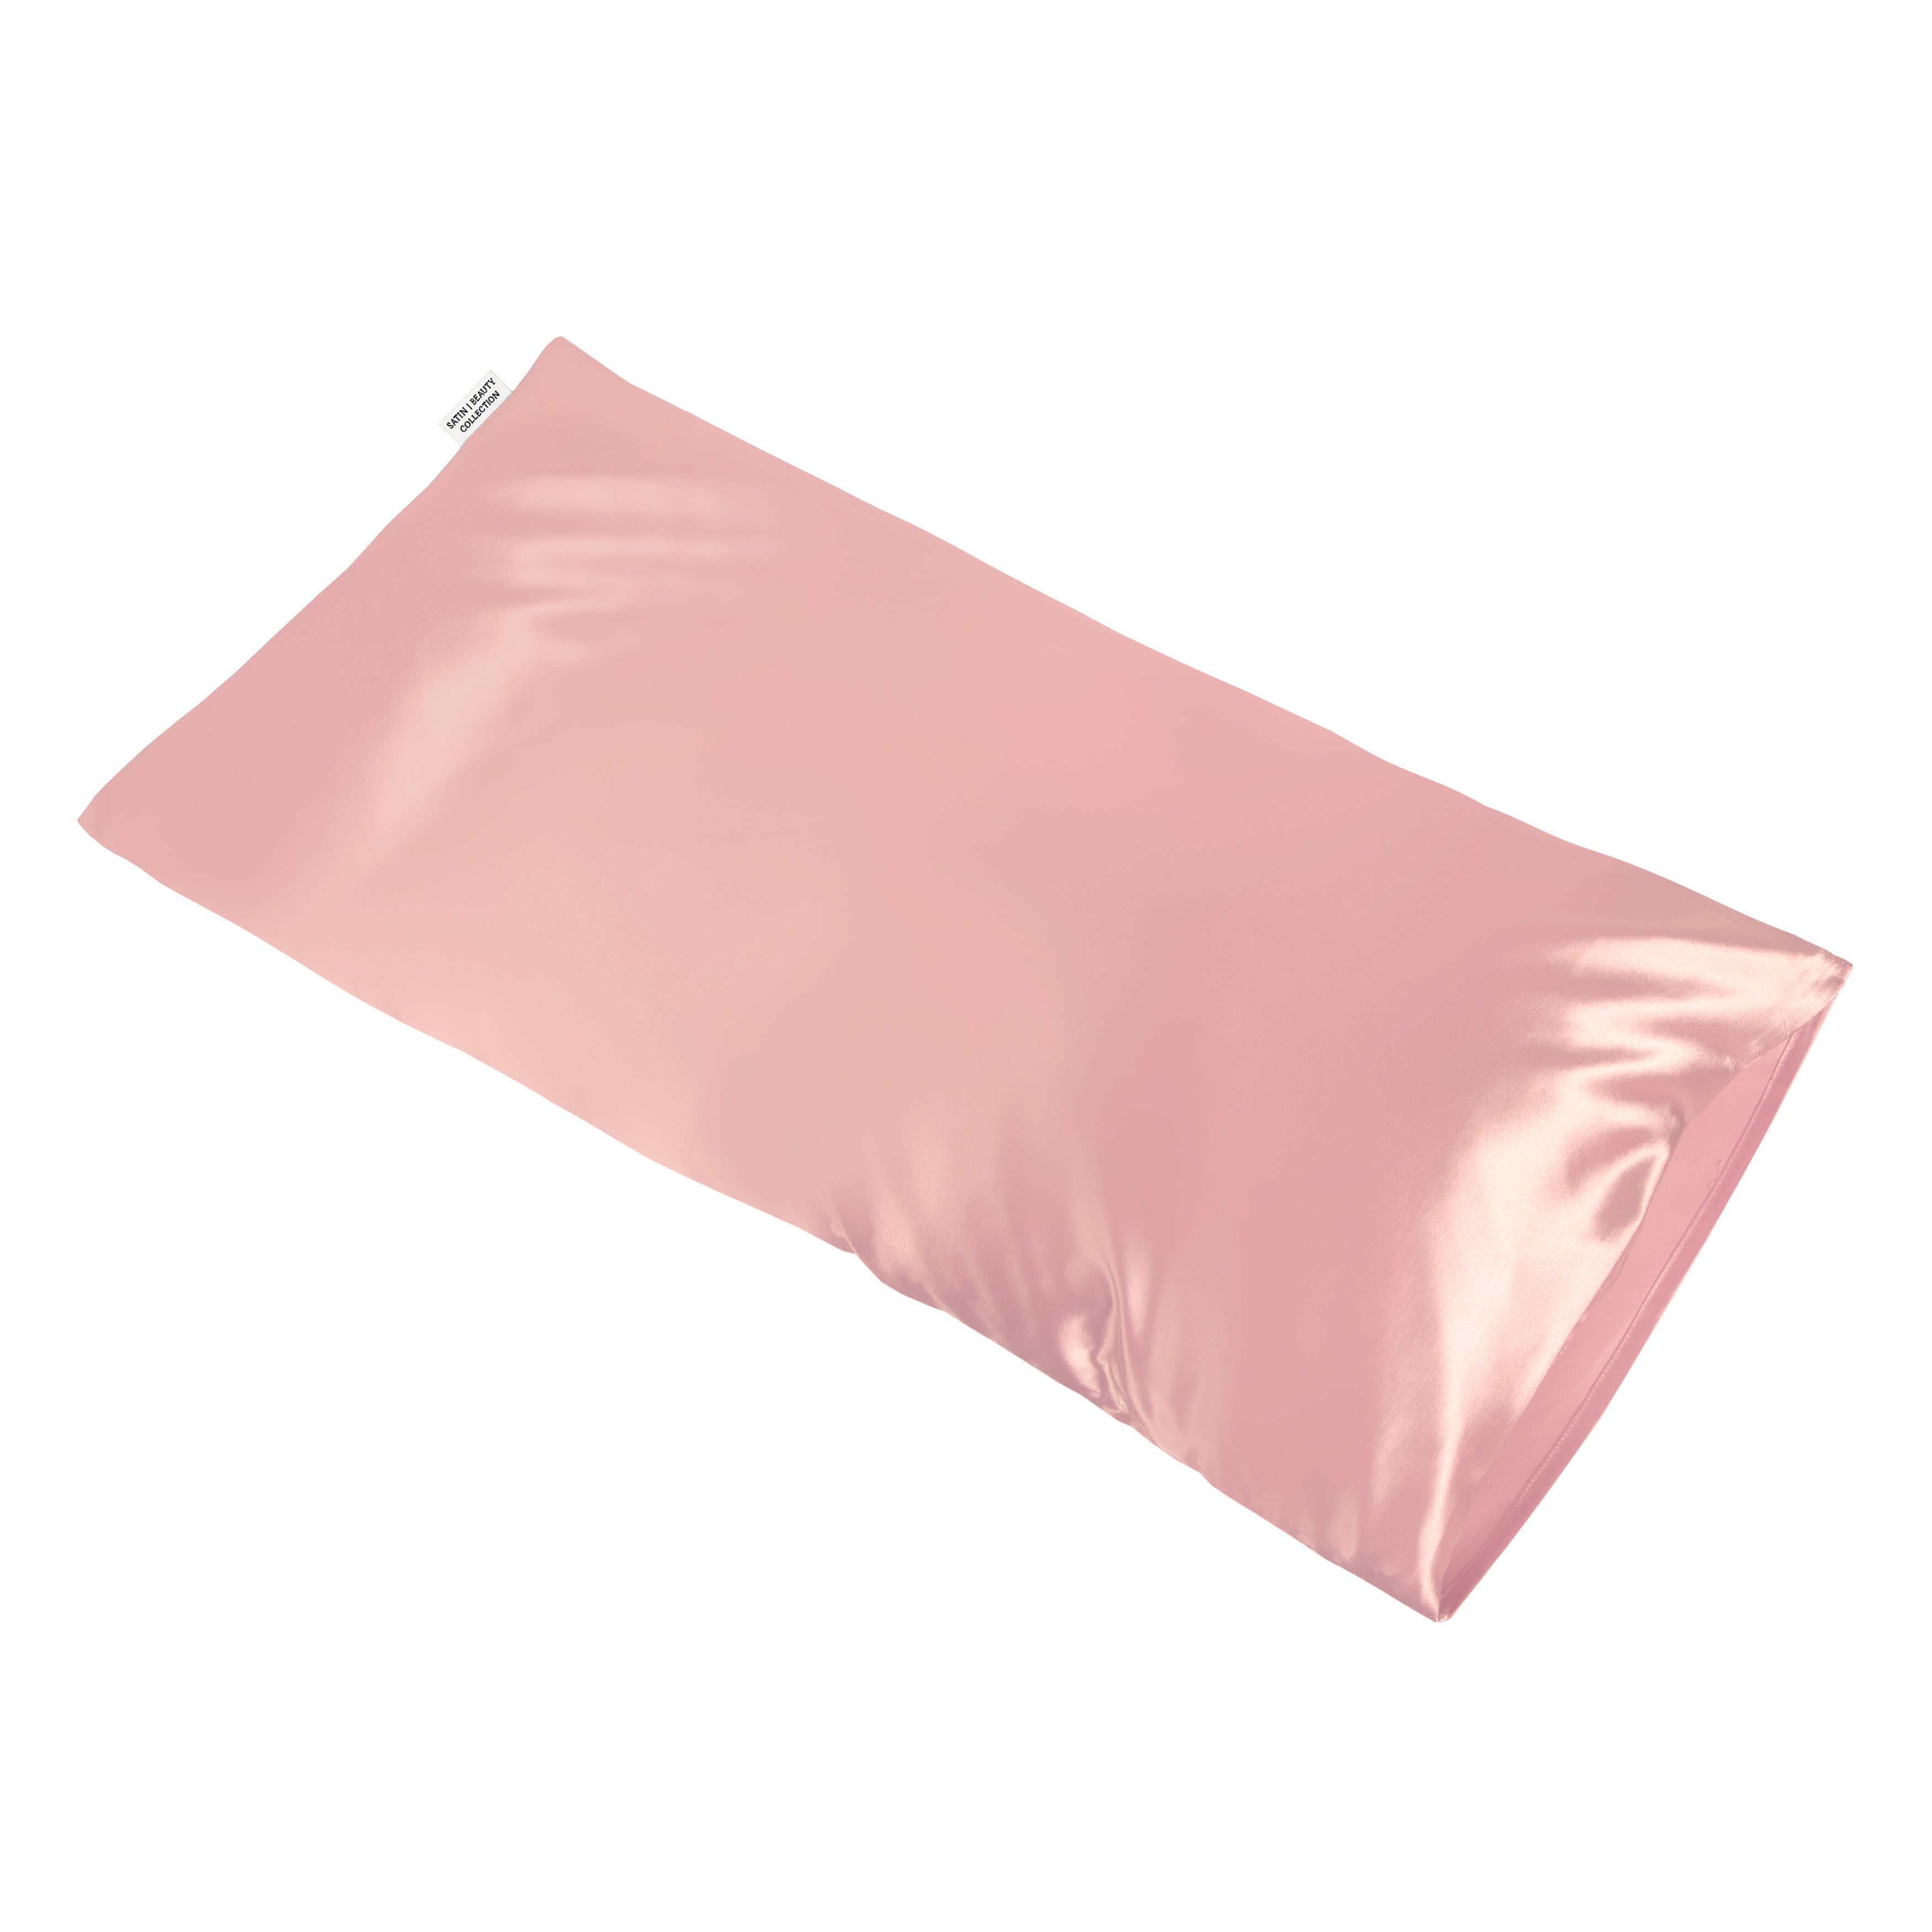 Satin Pillow - Baby Pink (40x80)